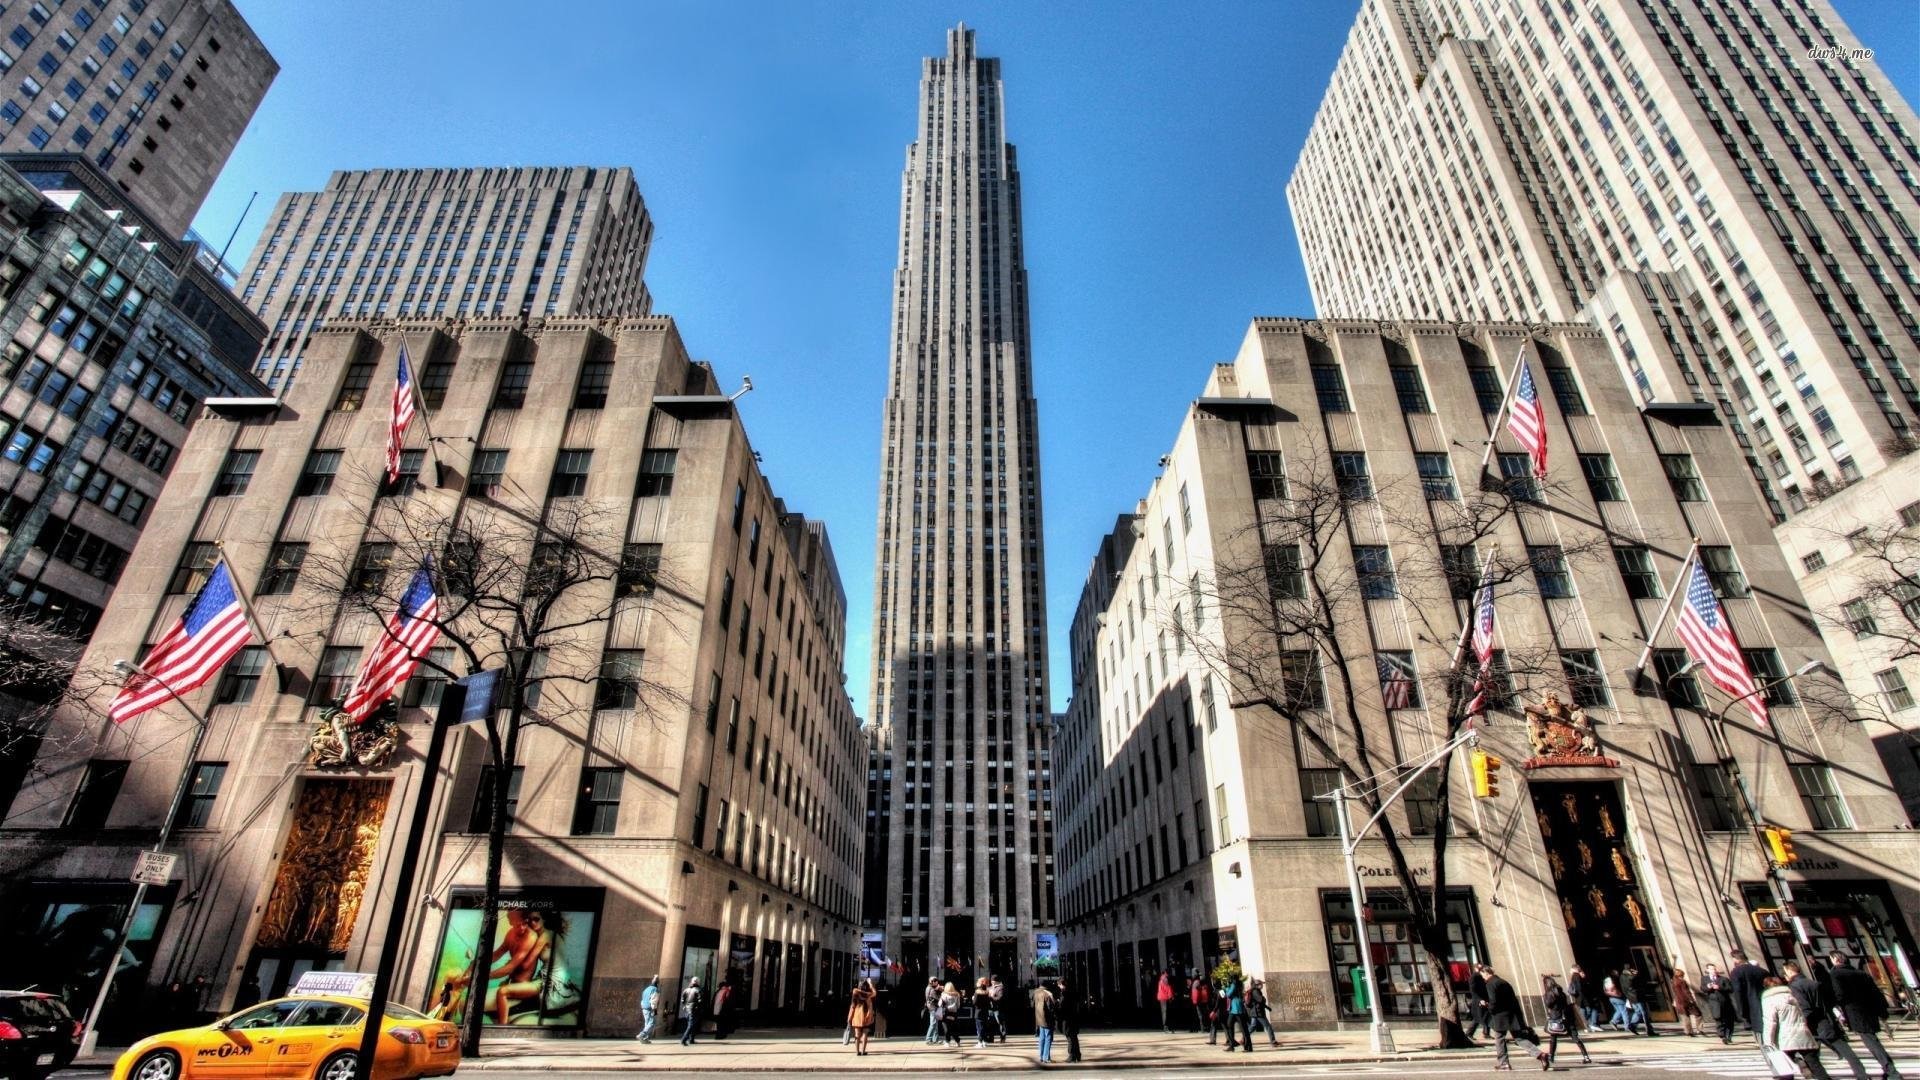 Rockefeller Center Building In New York City Wallpapers - New York's Rockefeller Center - HD Wallpaper 